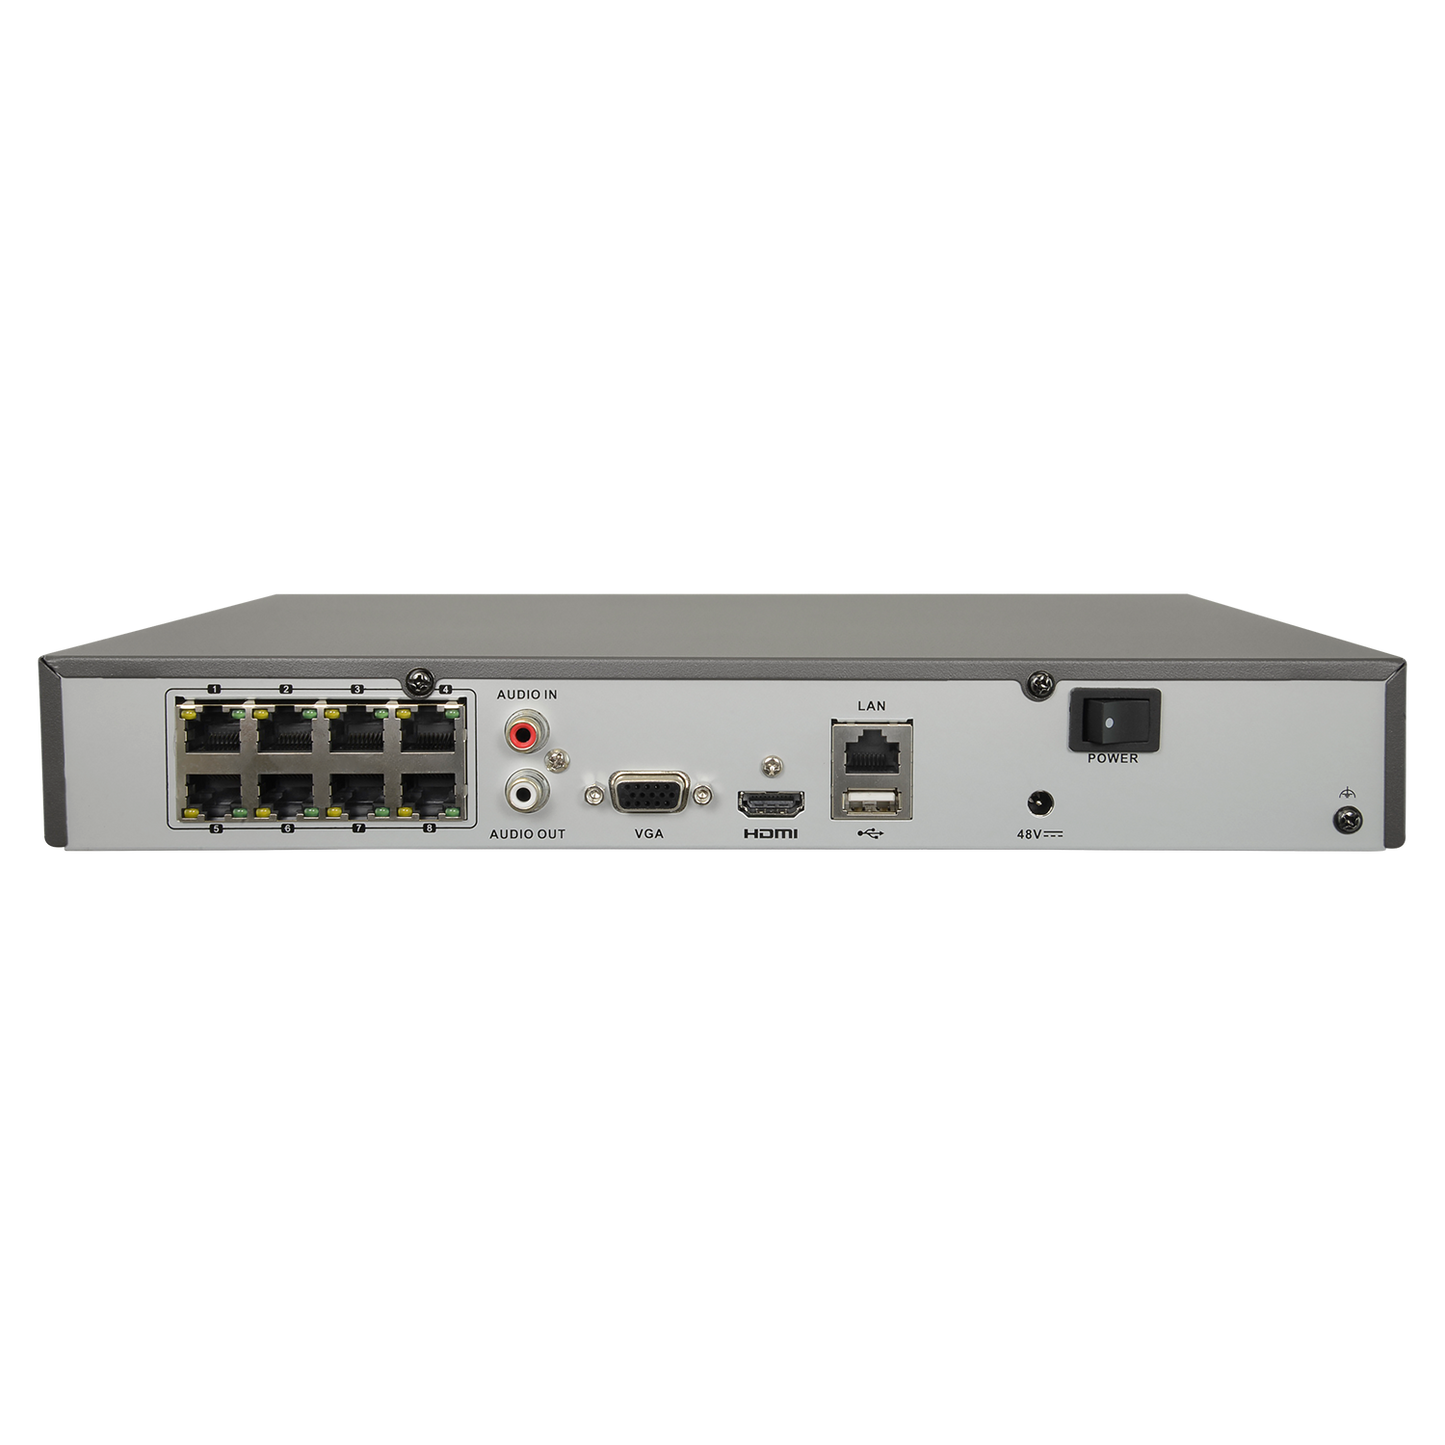 NVR para cámaras IP - 8 CH vídeo / compresión H.265+ - 8 canales PoE - Resolución máxima 8Mpx - Ancho de banda 80 Mbps - Salida HDMI 4K y VGA - Permite 1 disco duro